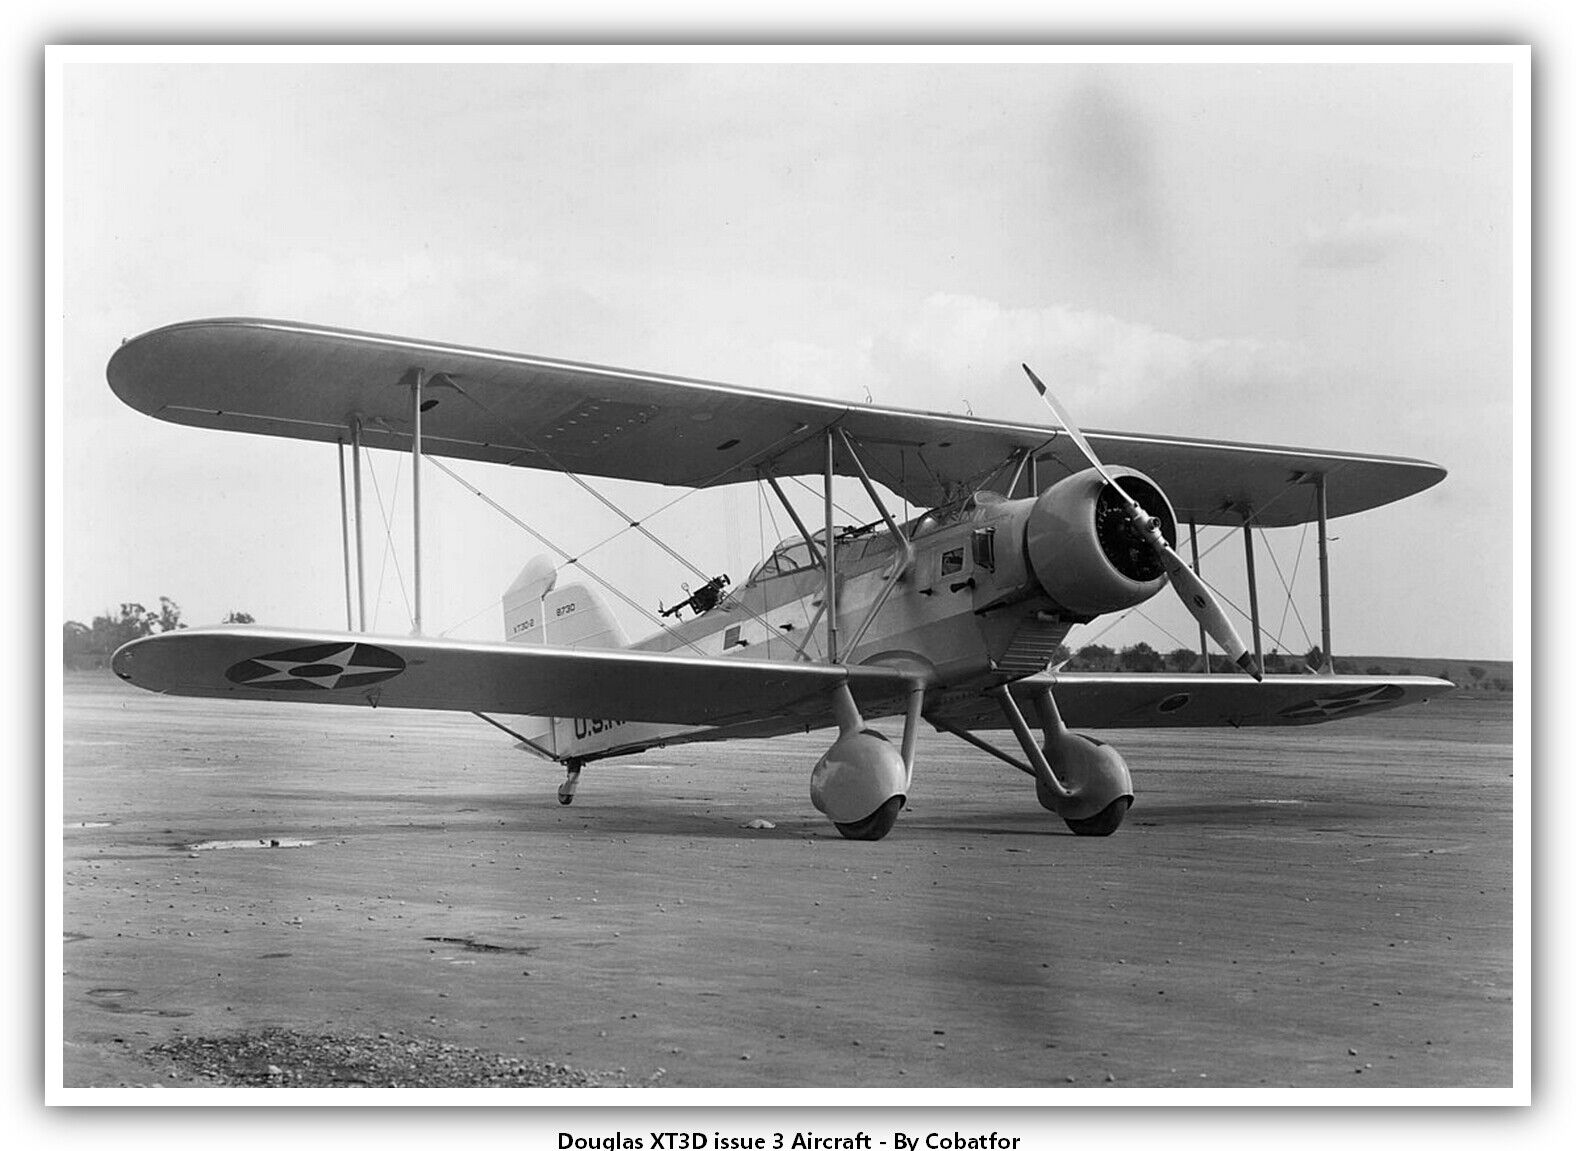 Douglas XT3D issue 3 Aircraft